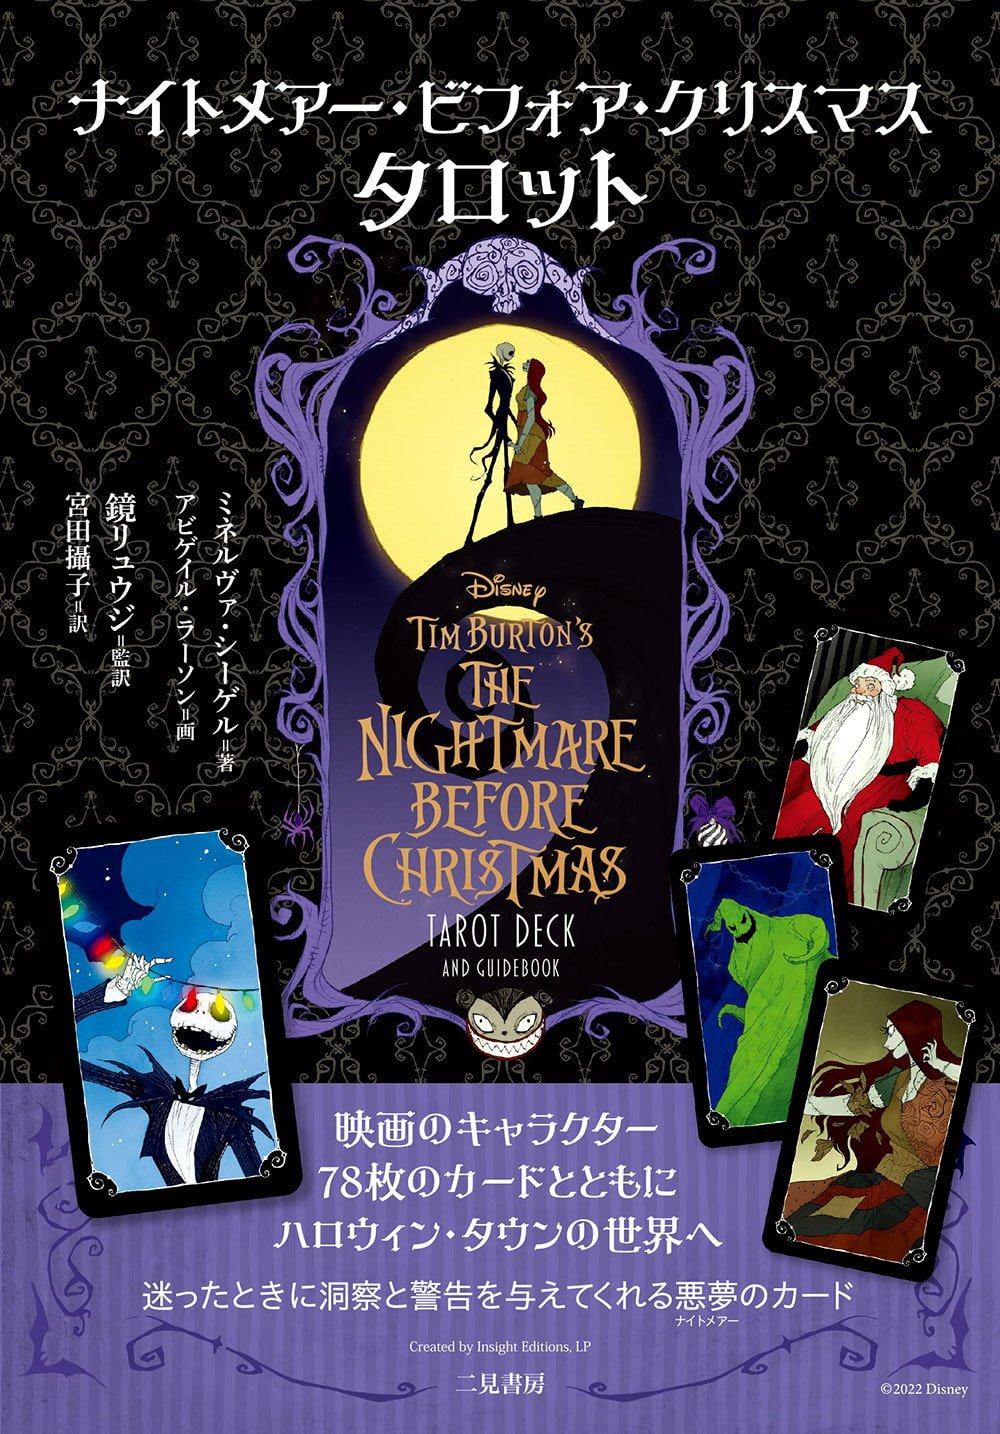 ナイトメアー・ビフォア・クリスマス - nightmare before christmas